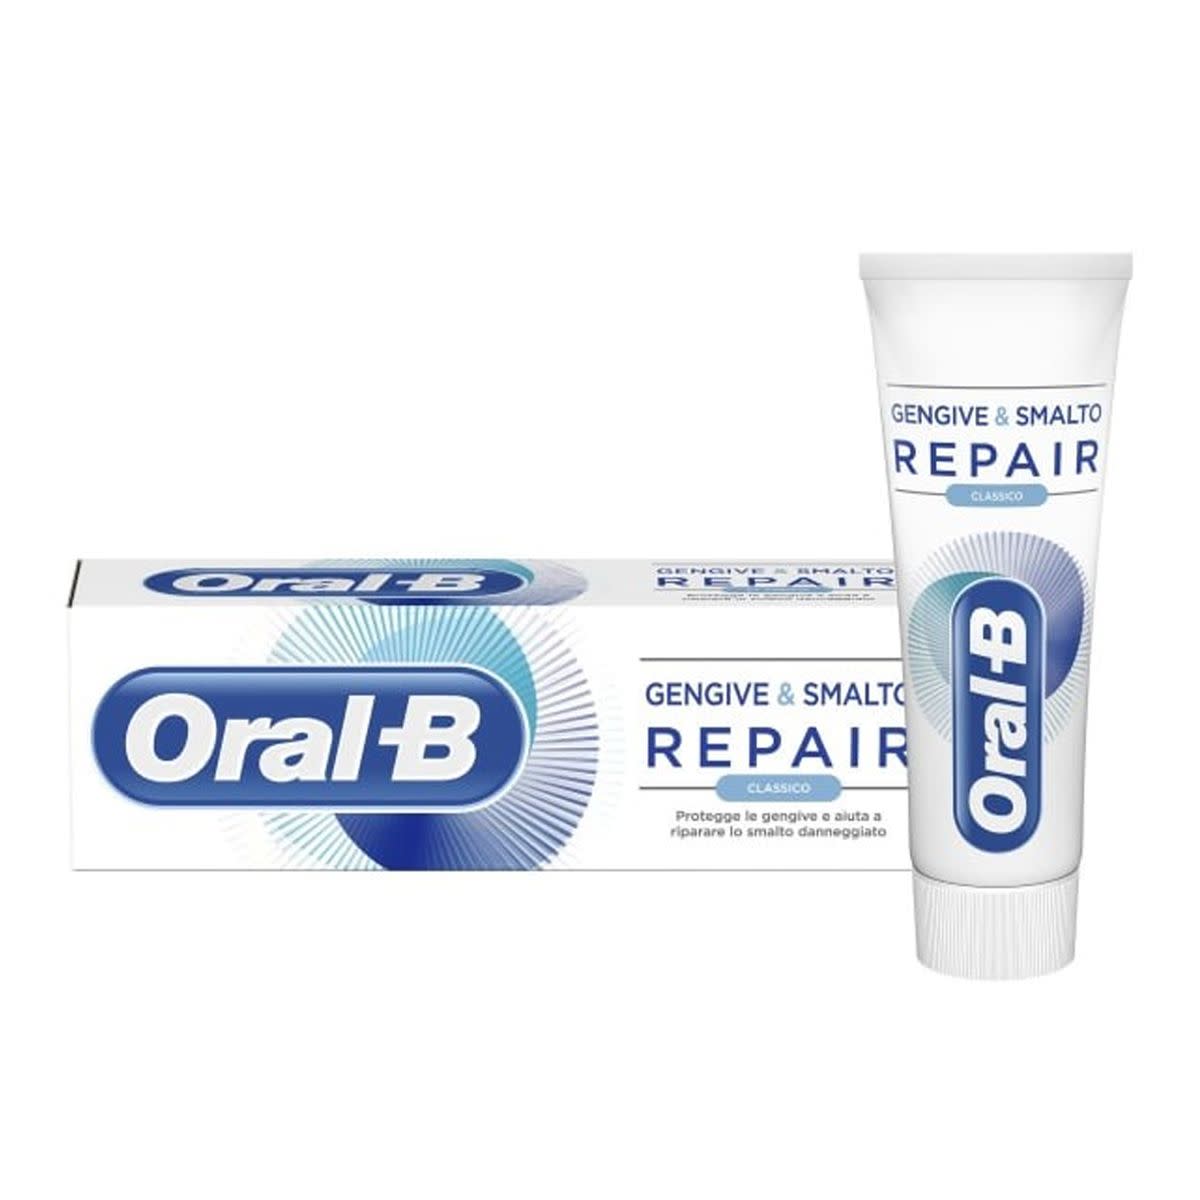 982509705 - Oral-B Gengive e Smalto Dentifricio Repair Classic 75ml - 4708789_2.jpg